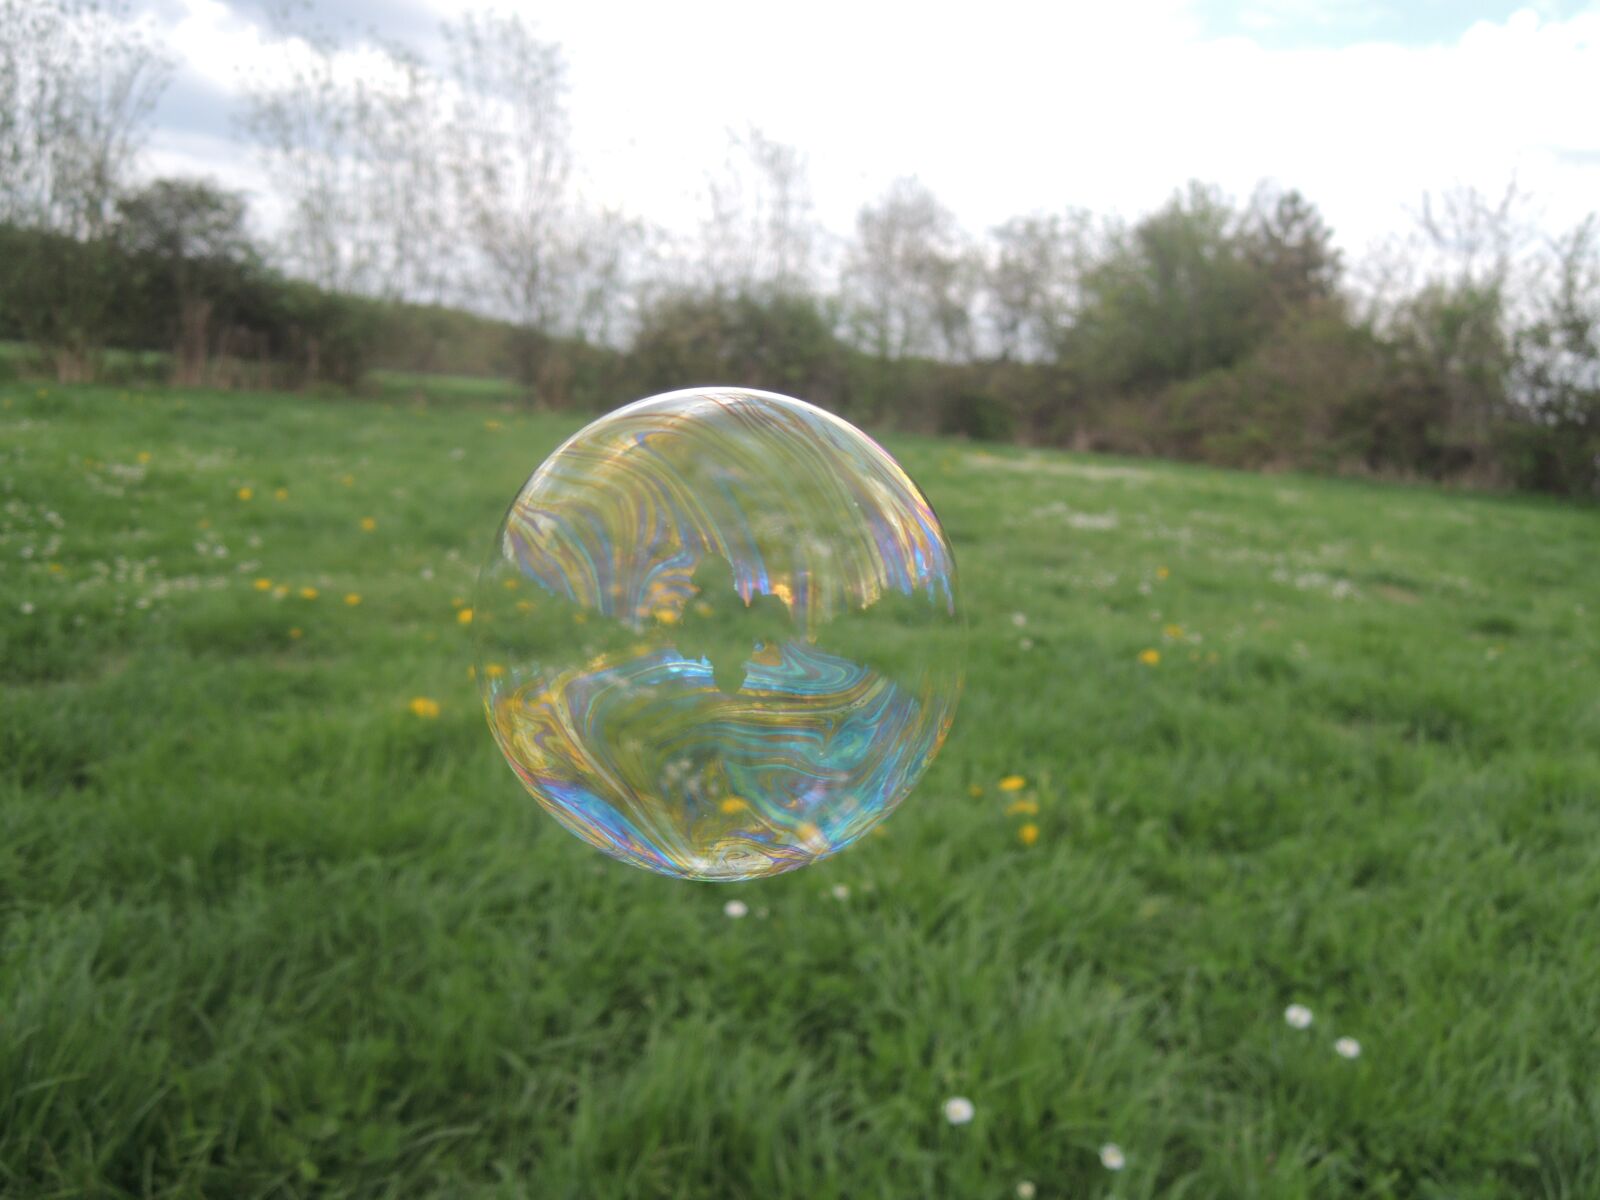 Nikon Coolpix P310 sample photo. Bubble, soap bubble, grass photography